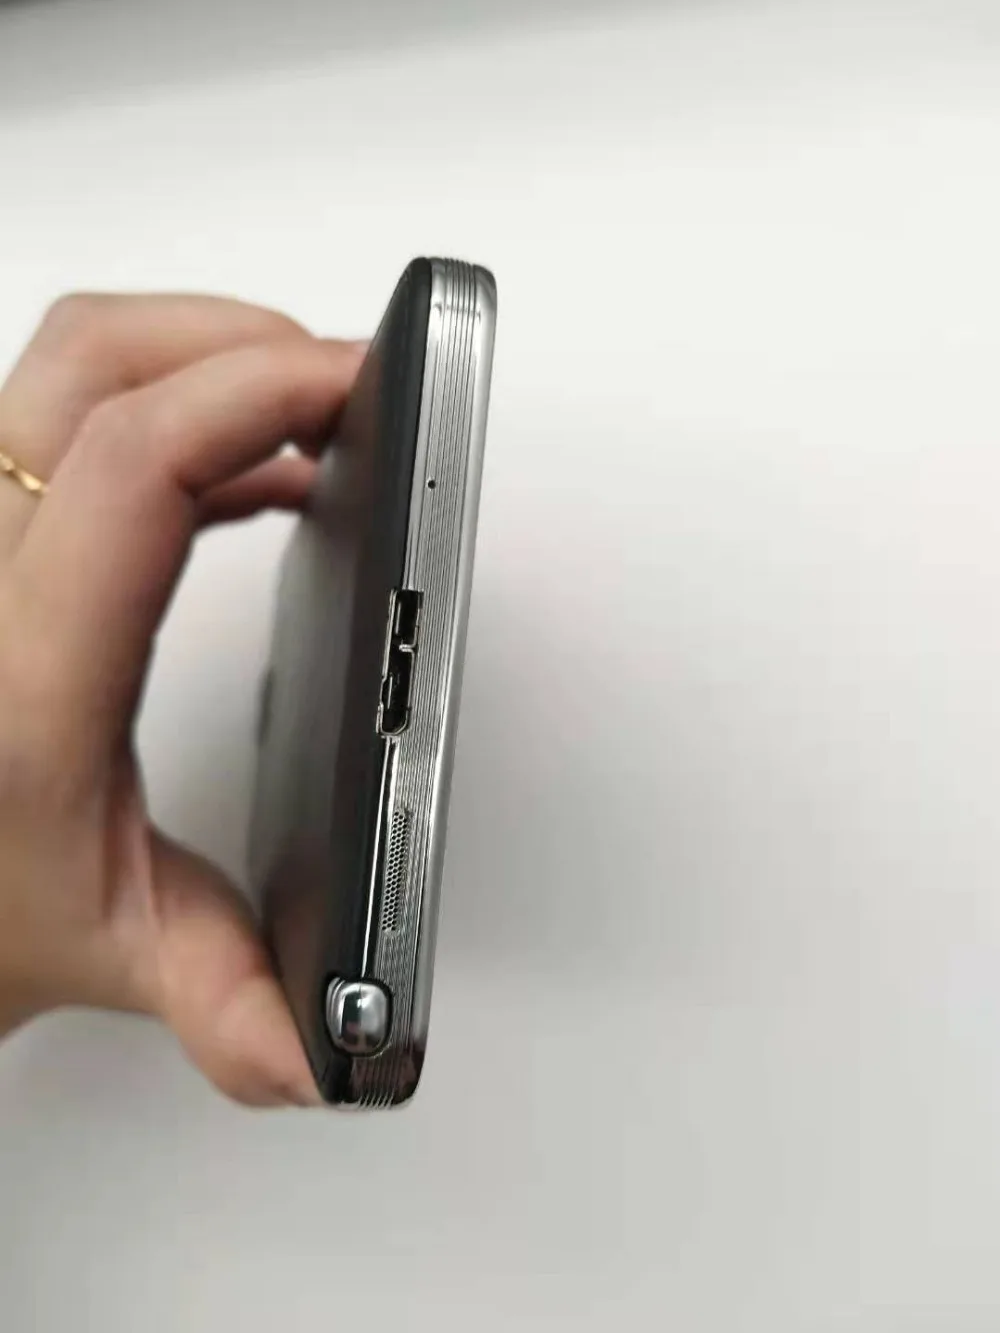 samsung Galaxy Note 3 N900 N9005 мобильный телефон четырехъядерный 5," 8MP 3g wifi gps note 3 Мобильный телефон отремонтированный